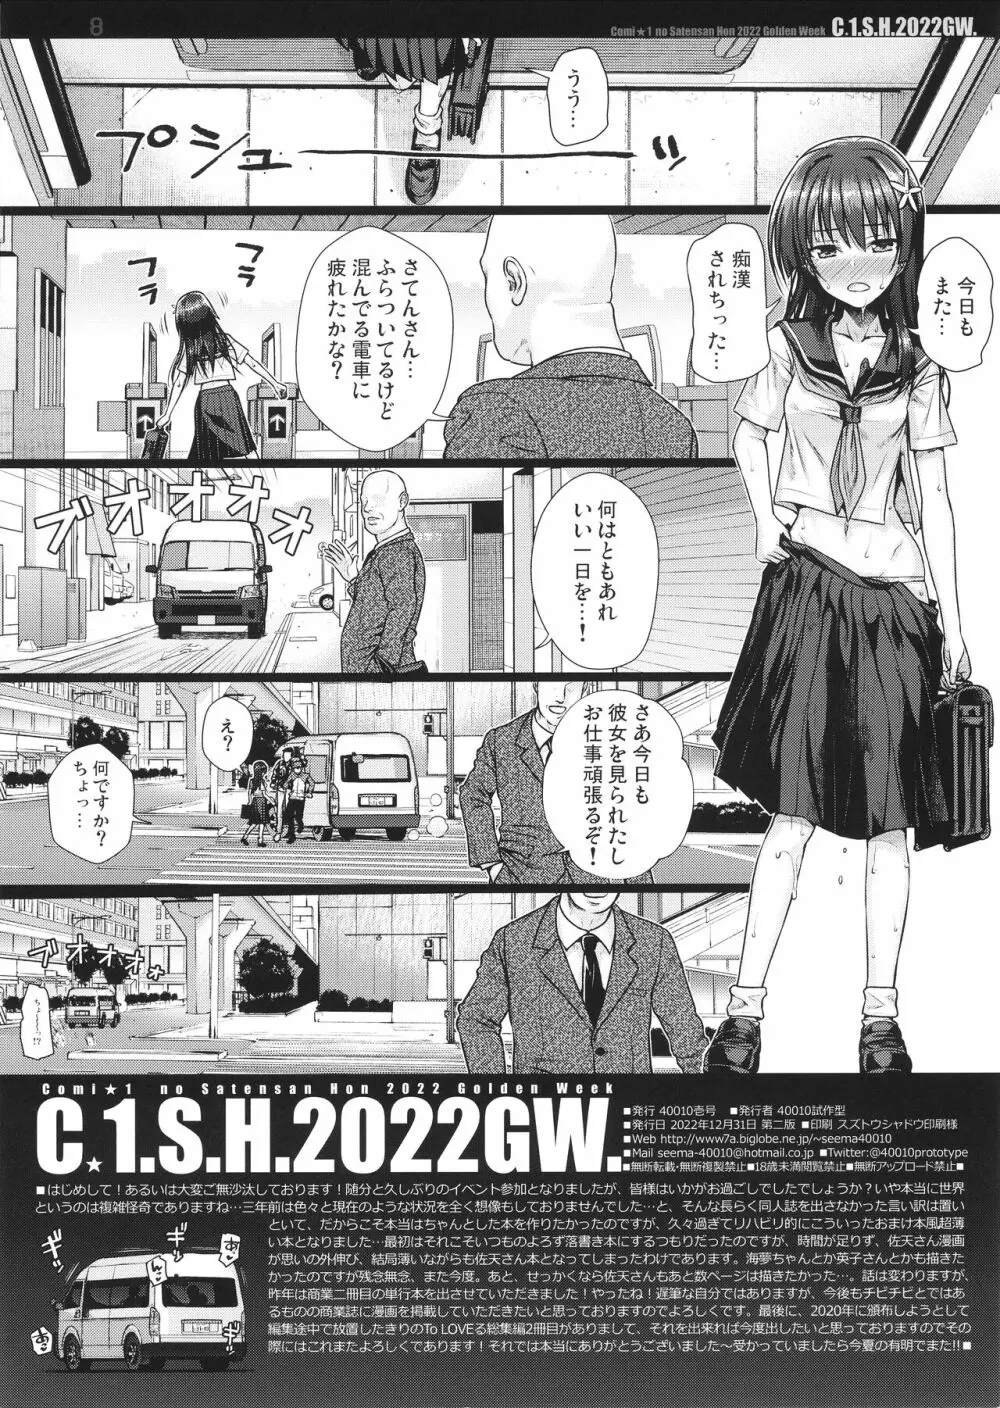 C☆1.S.H.2022GW. - page8